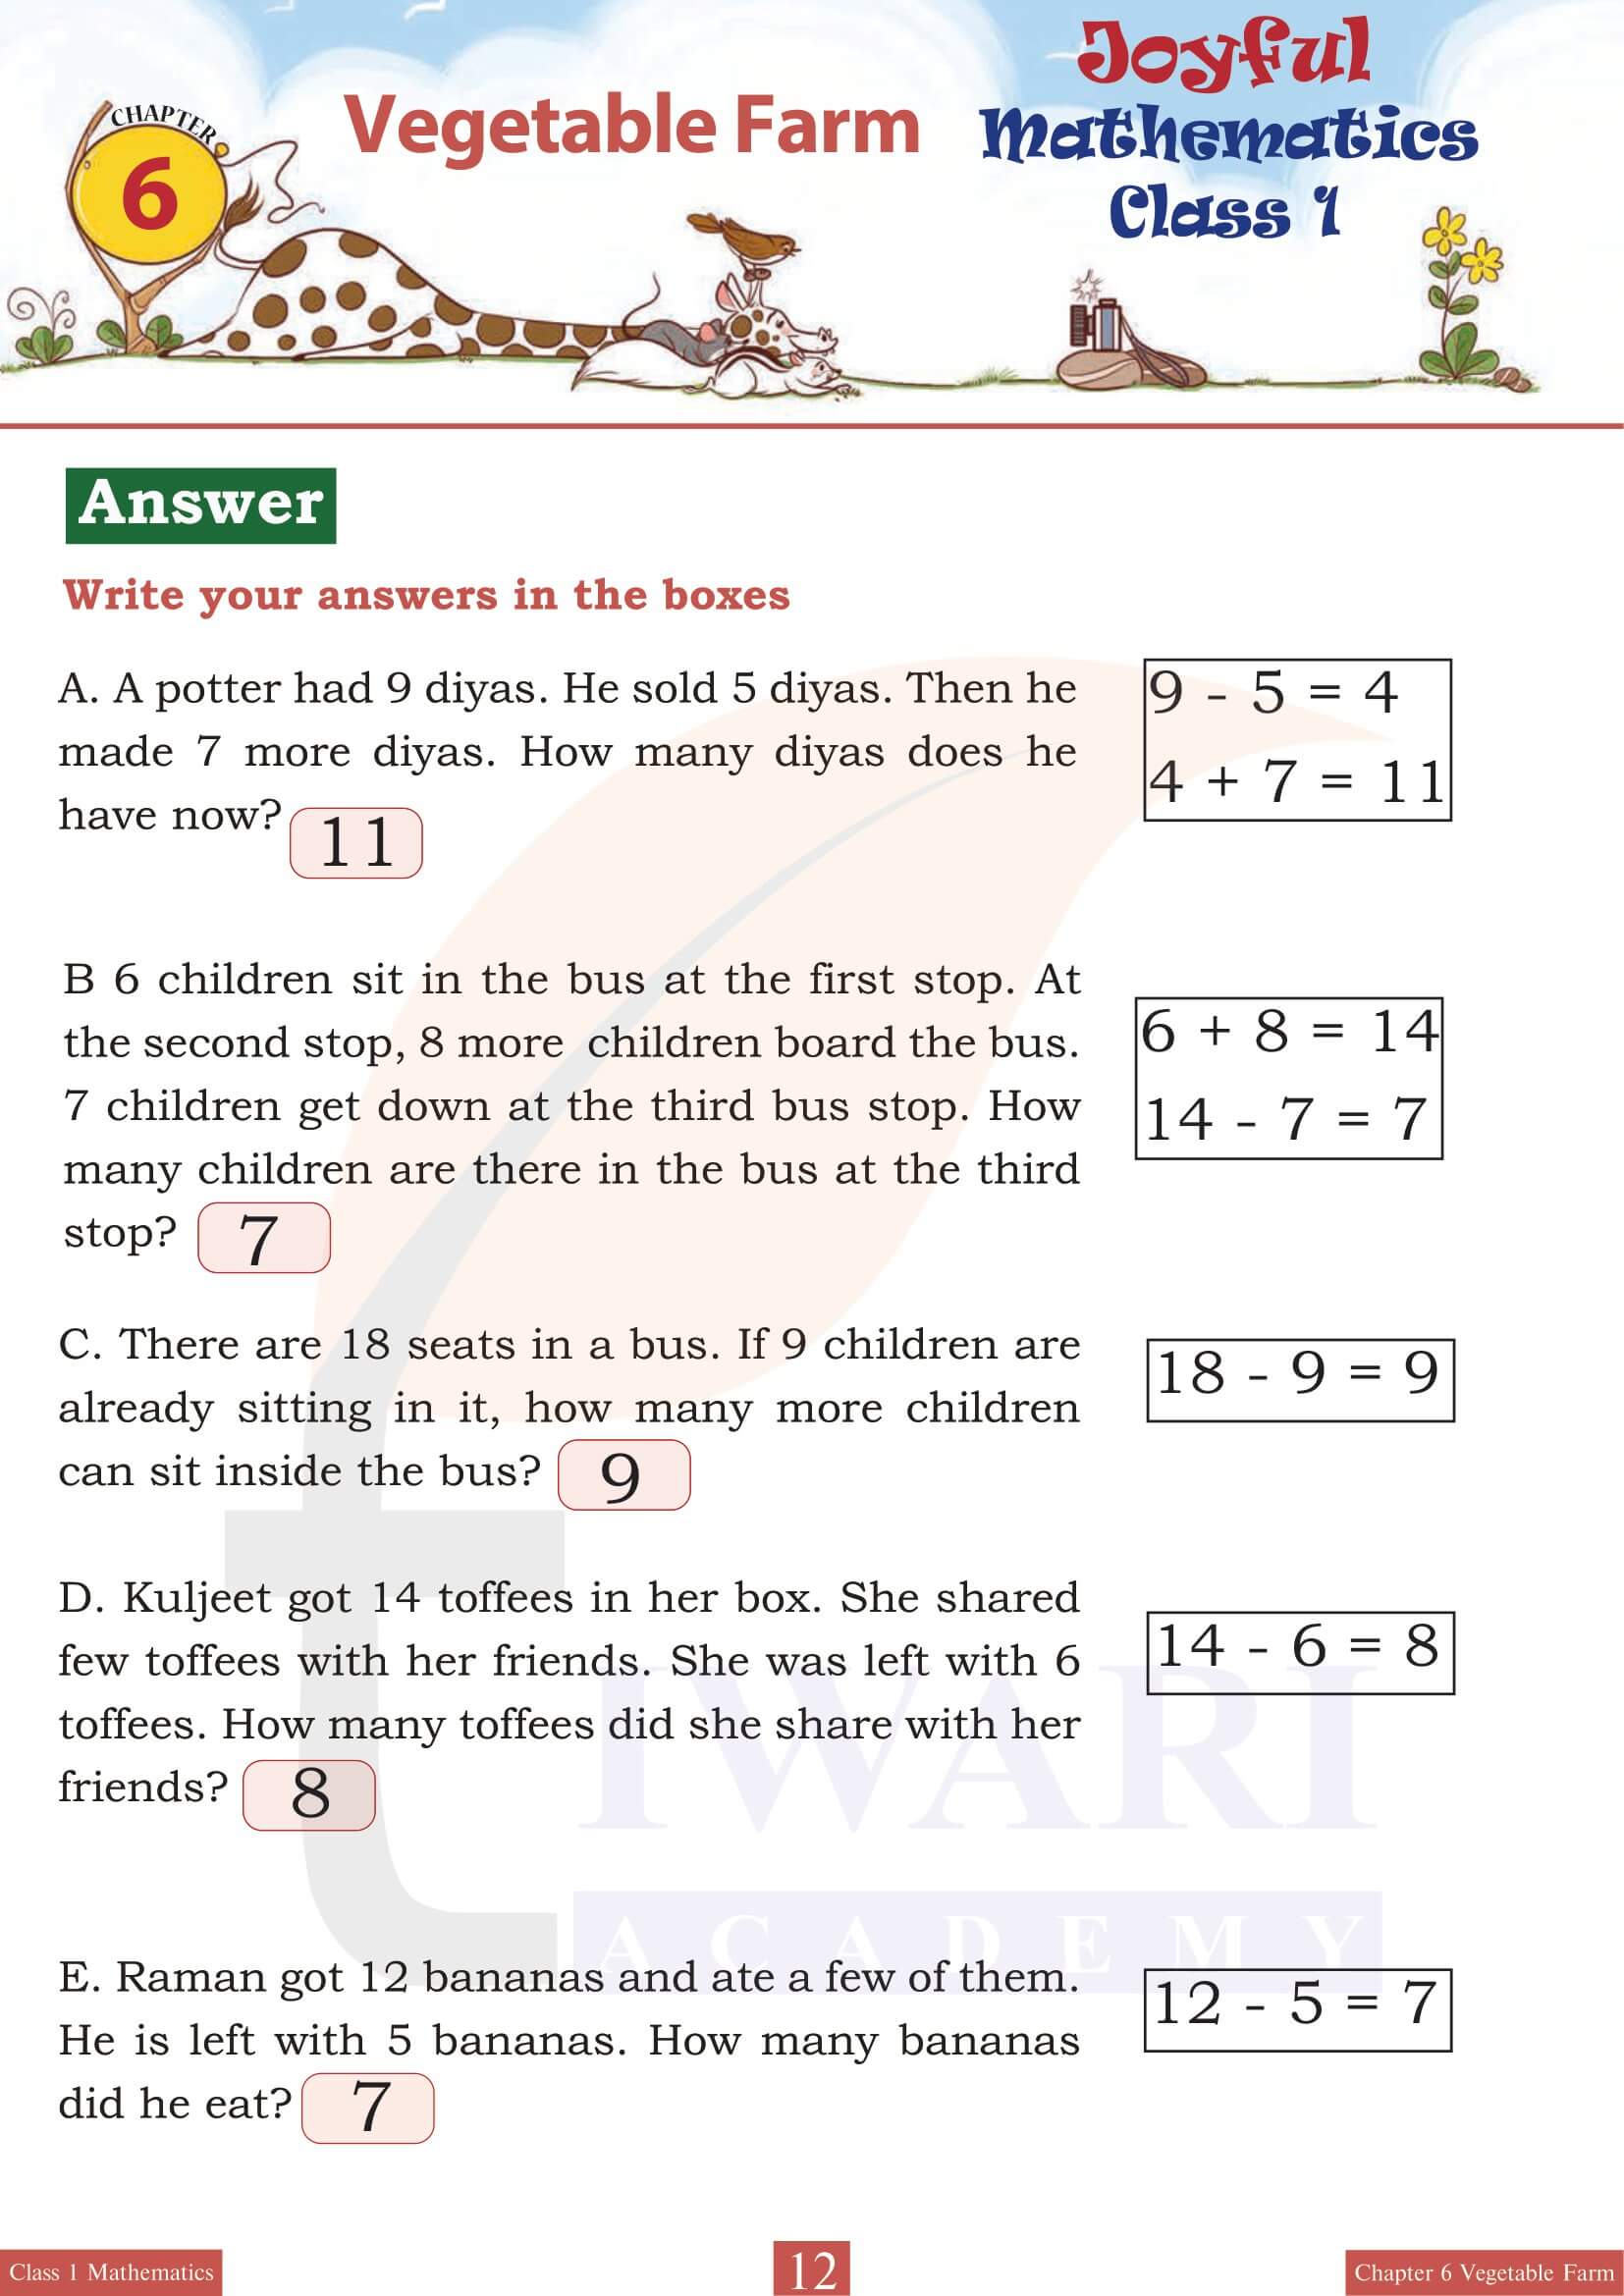 Class 1 Maths Joyful Chapter 6 free answers